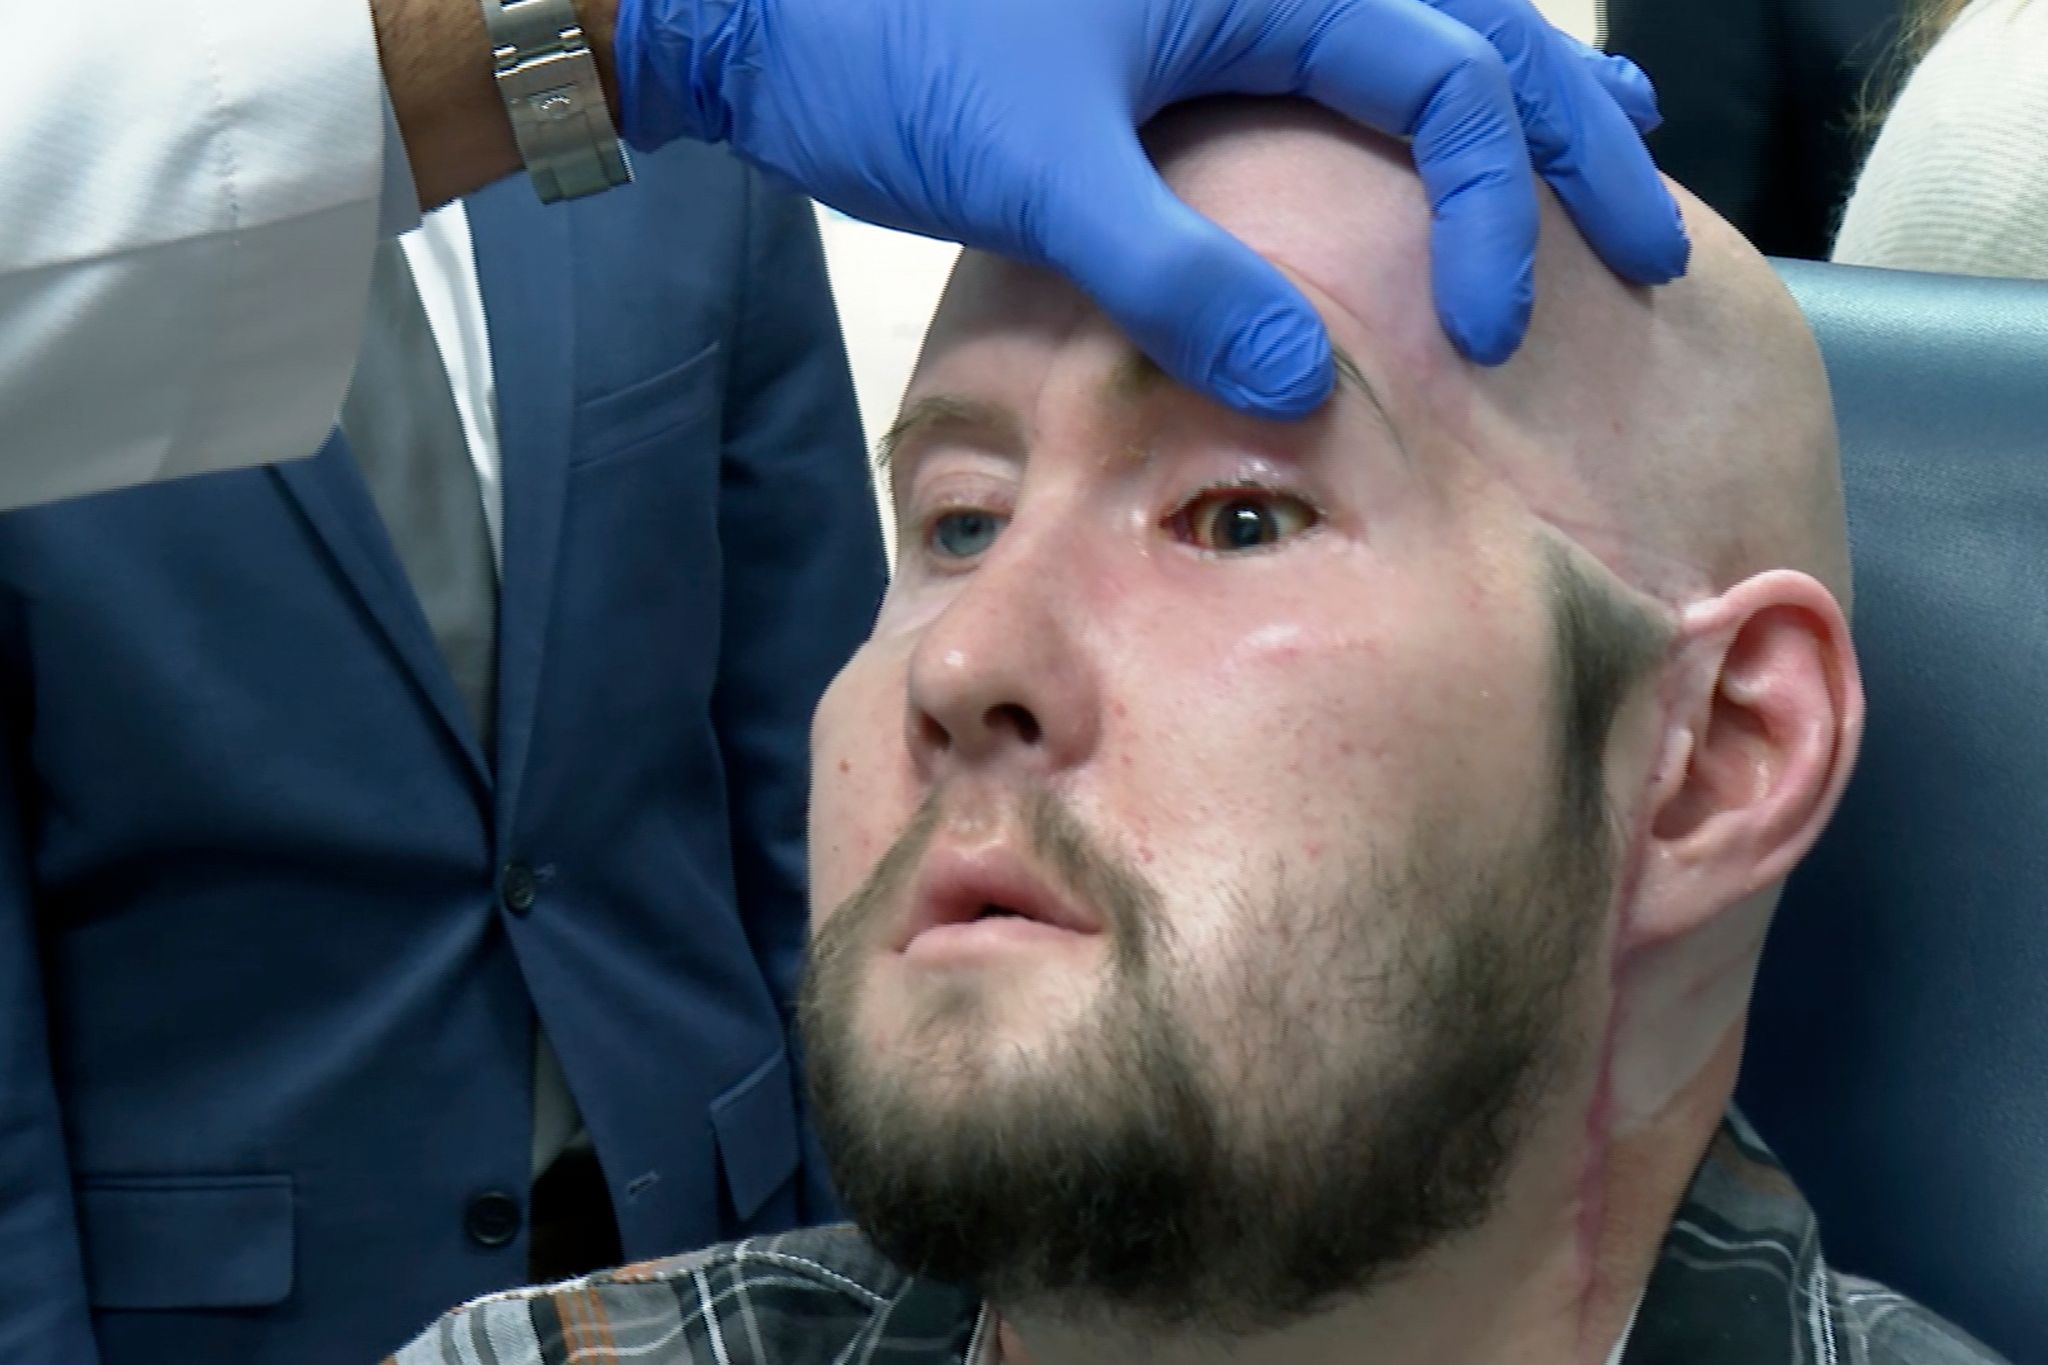 Einem US-amerikanischen Chirurgenteam ist eigenen Angaben zufolge die erste vollständige Augentransplantation weltweit gelungen.